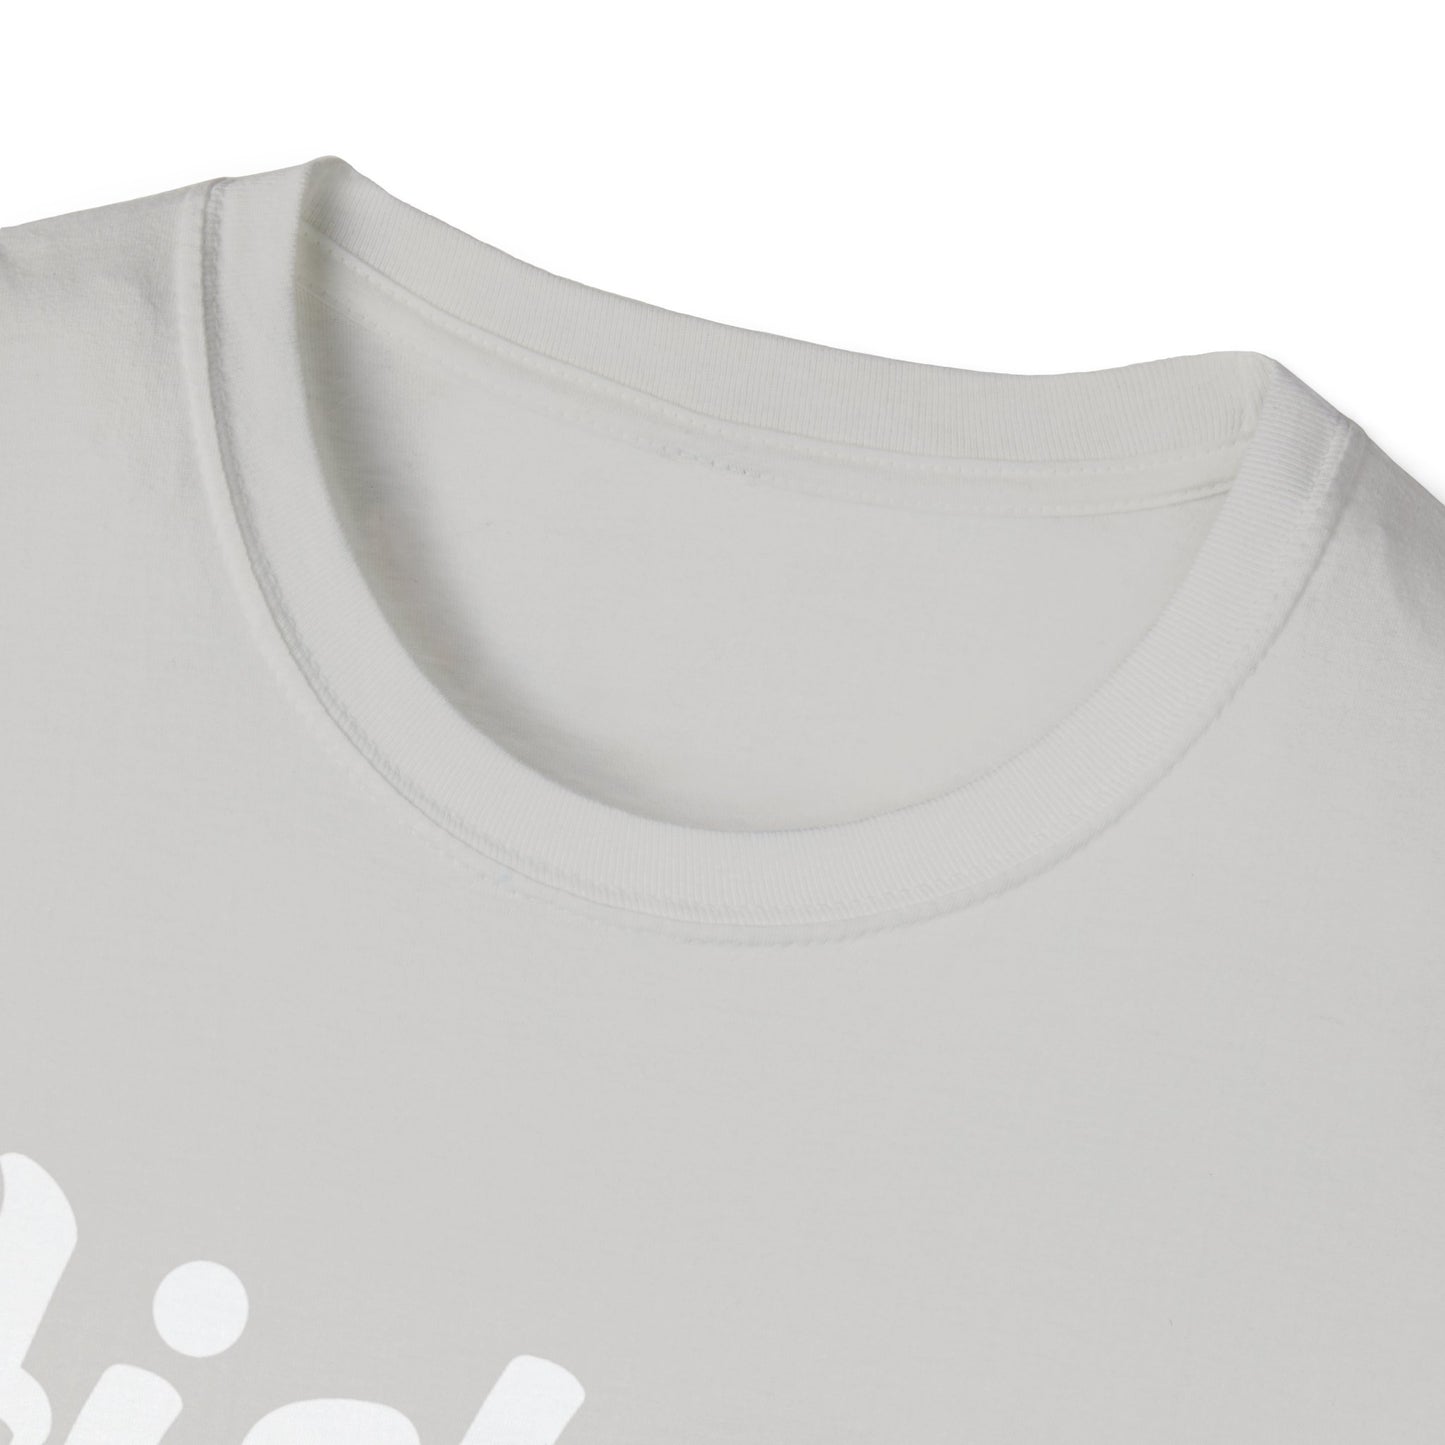 NB Q1 White - Unisex Softstyle T-Shirt